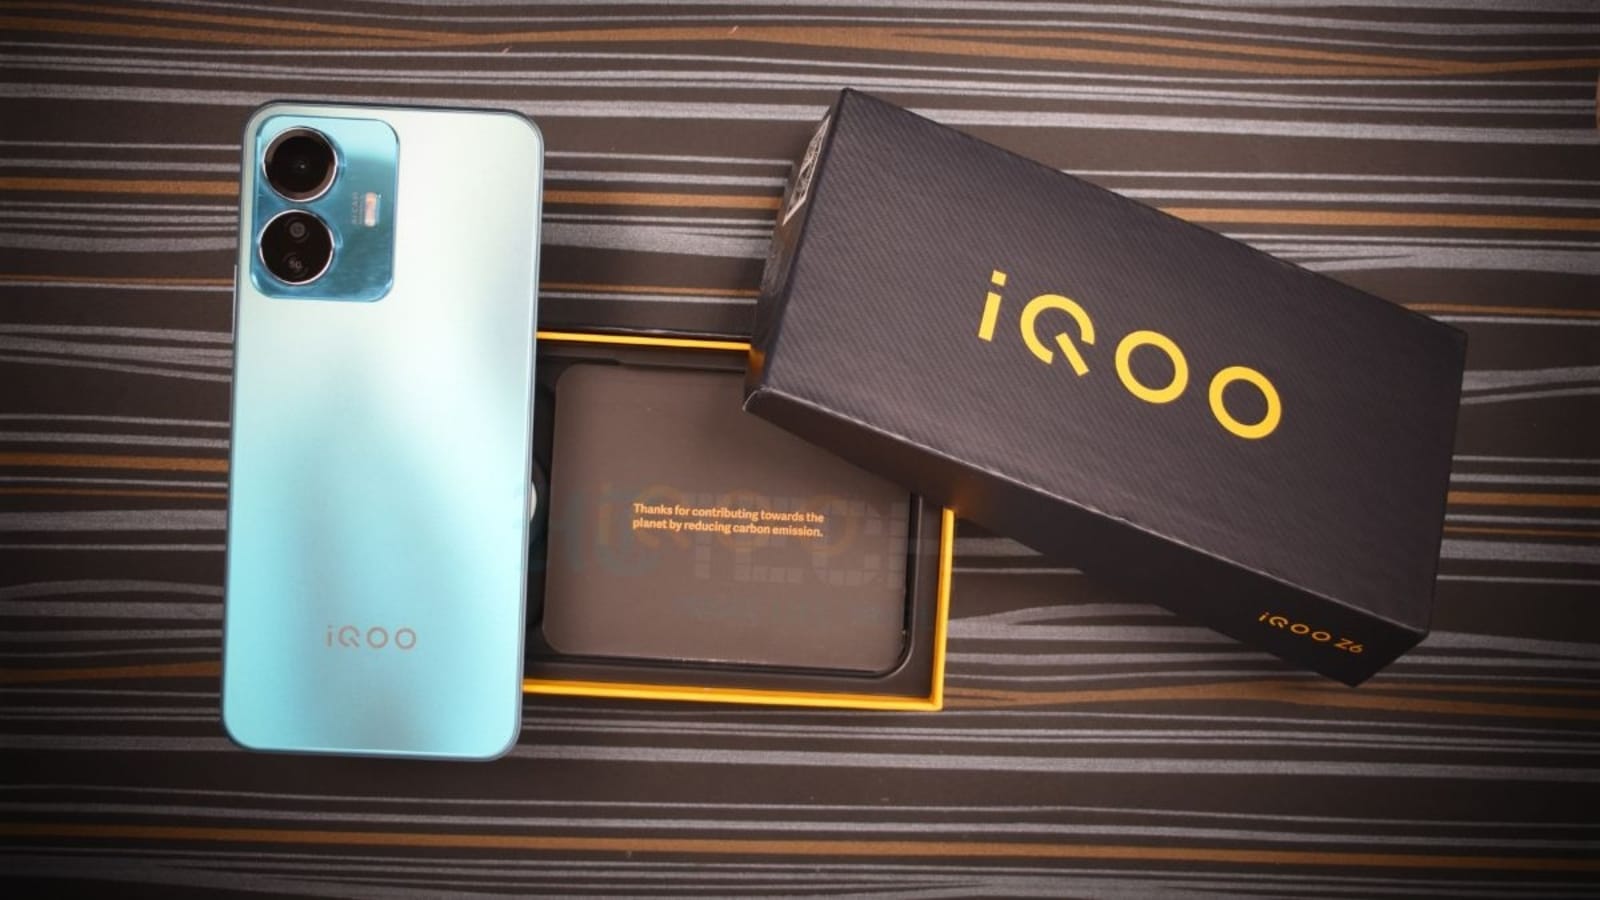 Chào mừng đến với iQOO Z6 Lite 5G - chiếc điện thoại vượt trội về hiệu suất và tốc độ. Màn hình lớn, camera ấn tượng và tính năng 5G sẽ đưa bạn đến một trải nghiệm di động chưa từng có. Để biết thêm chi tiết về sản phẩm này, hãy xem hình ảnh kèm theo.